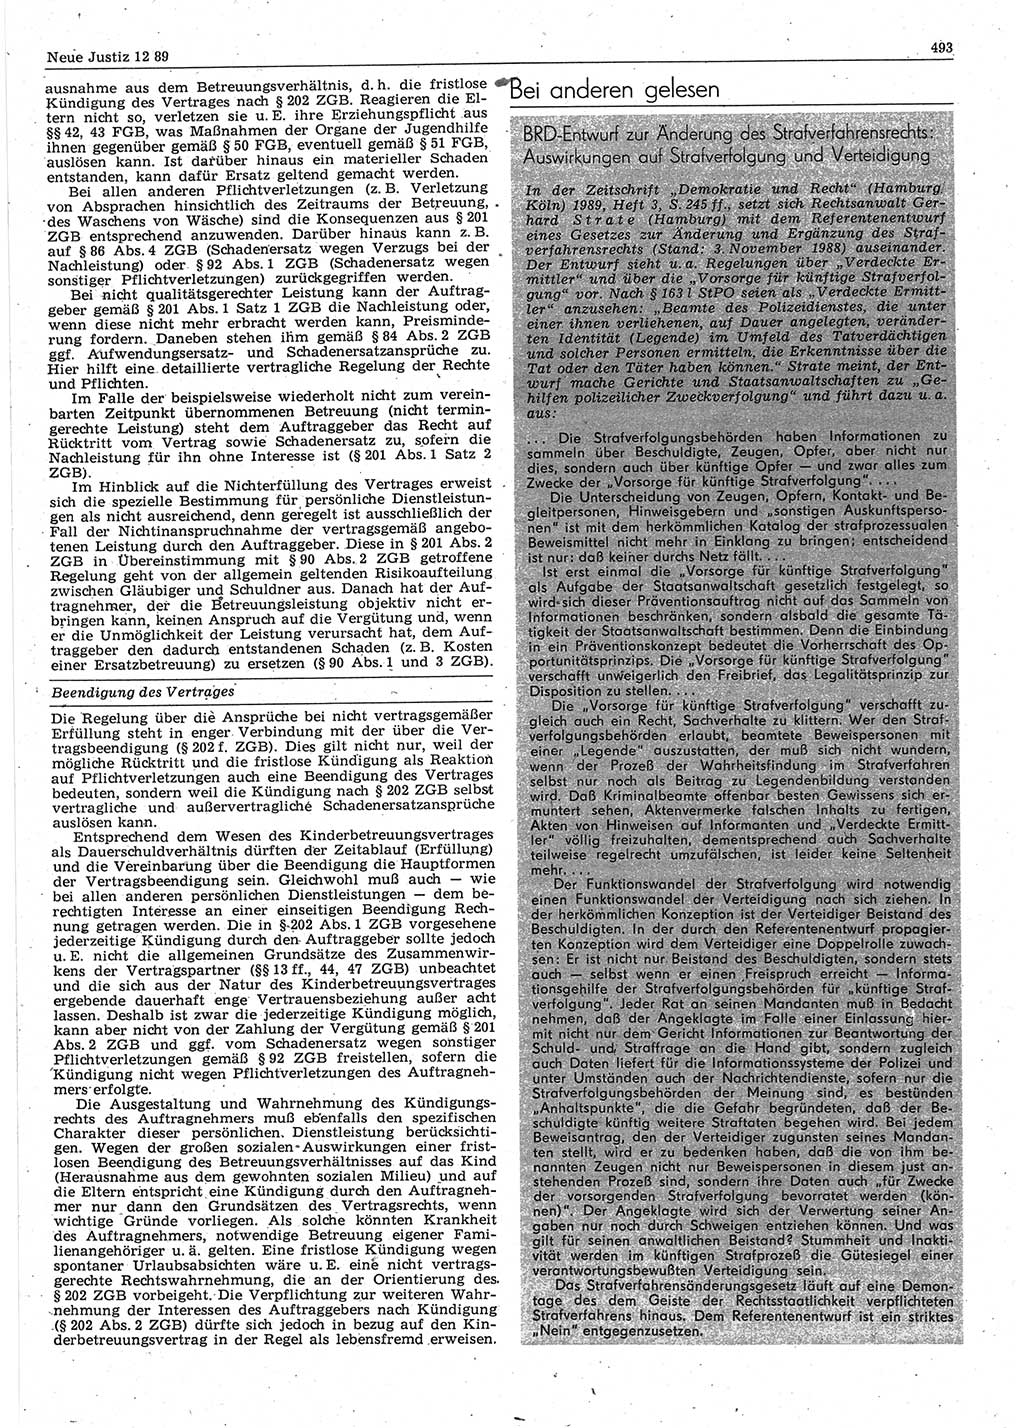 Neue Justiz (NJ), Zeitschrift für sozialistisches Recht und Gesetzlichkeit [Deutsche Demokratische Republik (DDR)], 43. Jahrgang 1989, Seite 493 (NJ DDR 1989, S. 493)